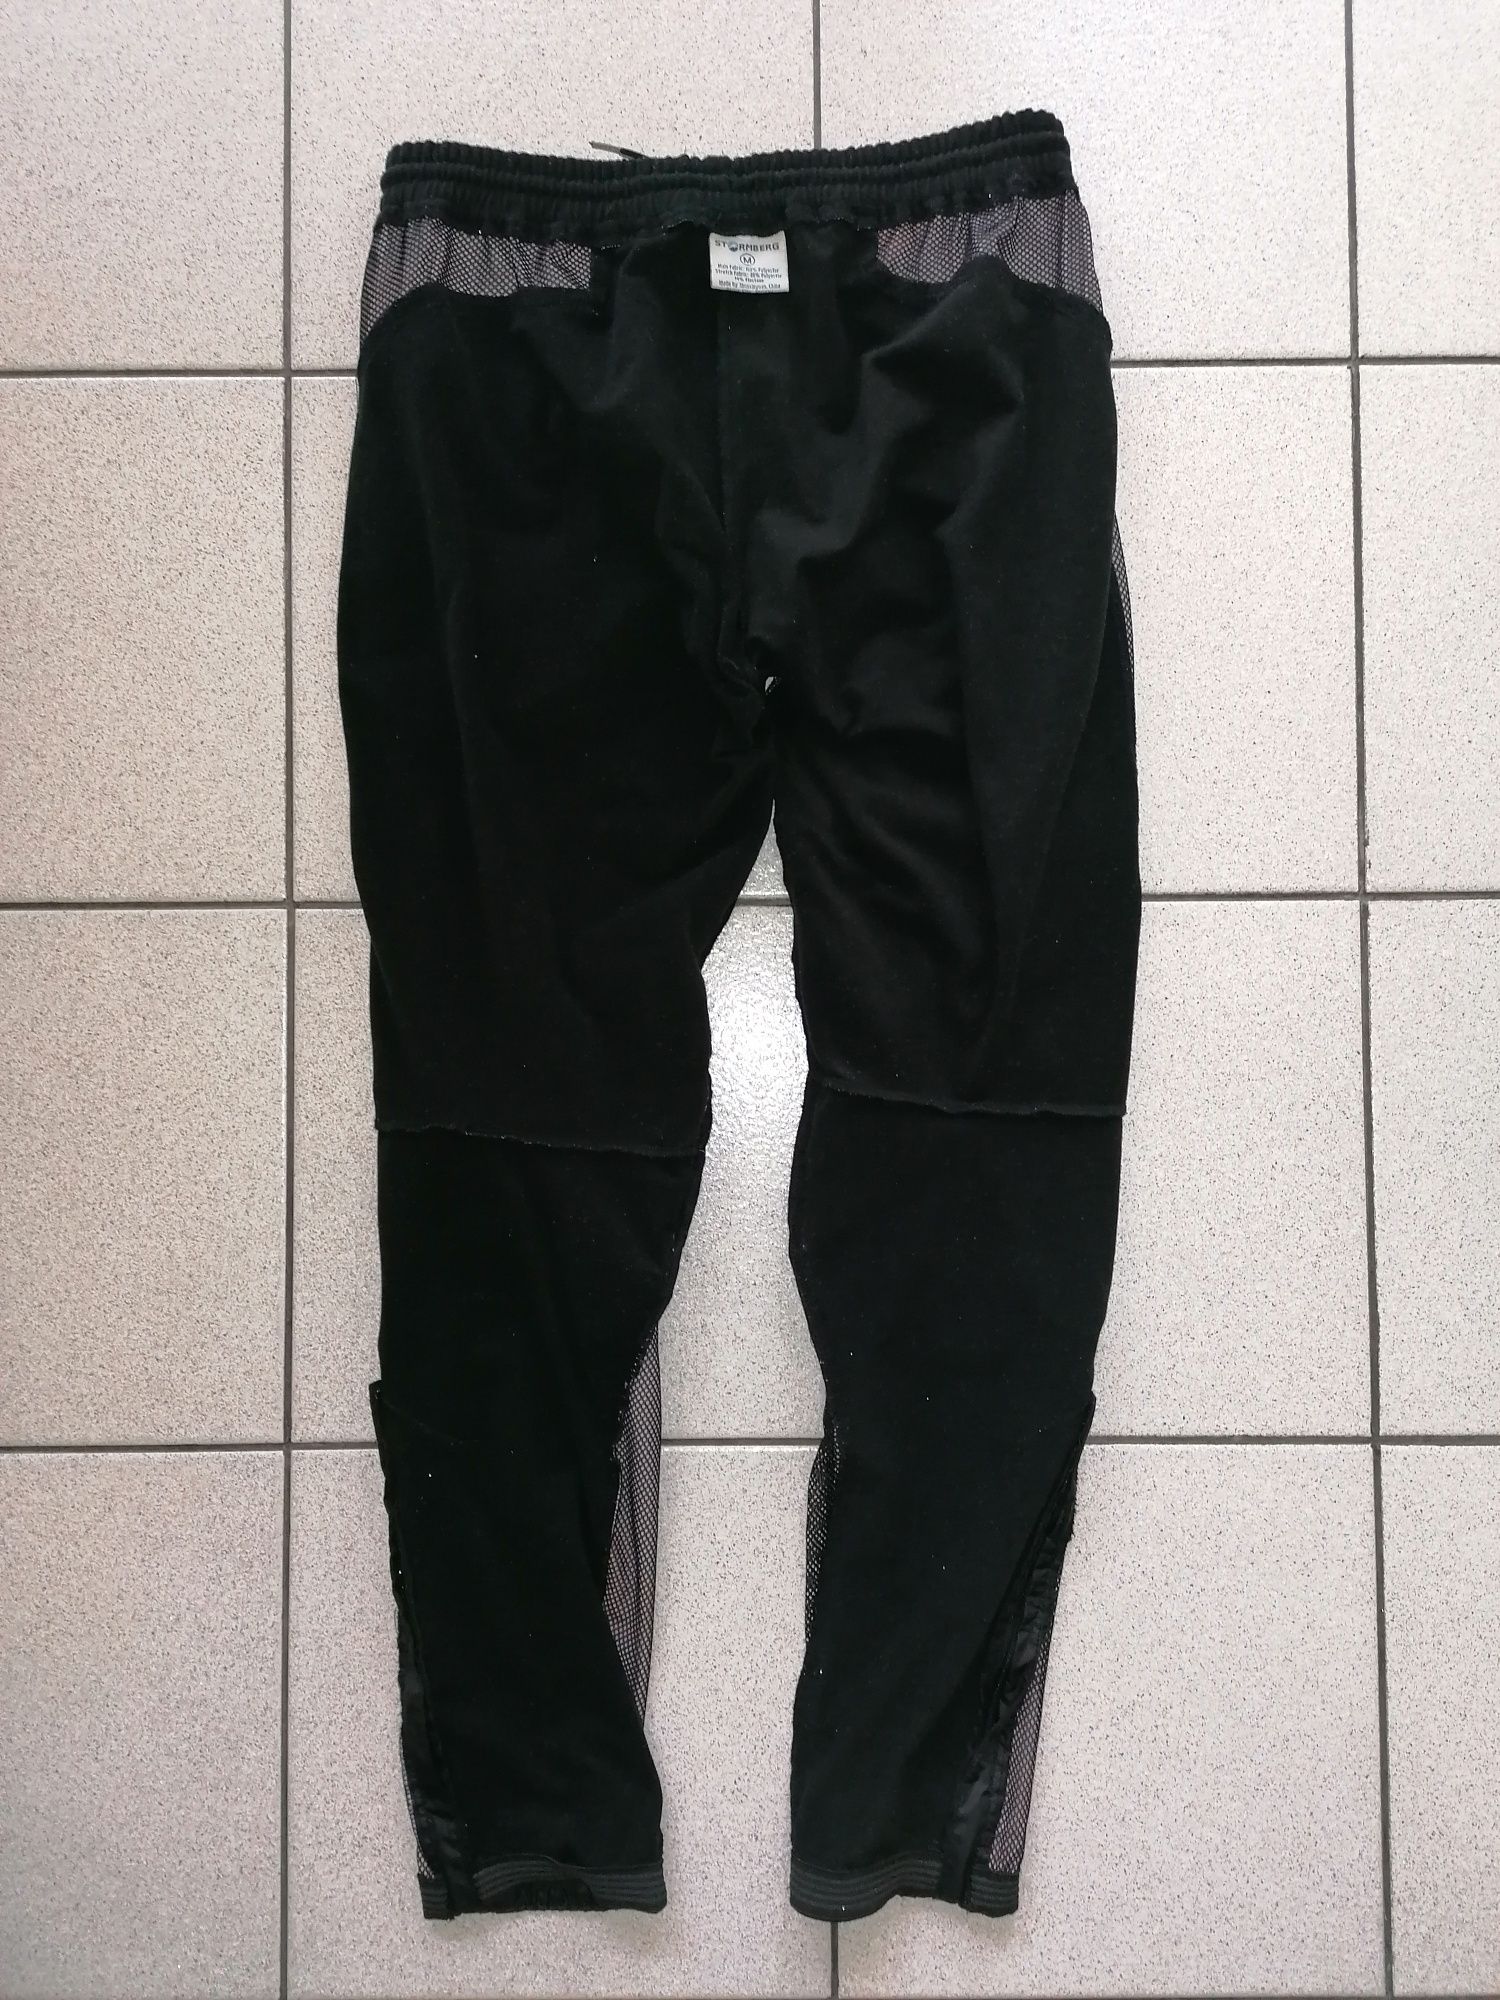 STORMBERG® - дамски спортен панталон - 29(М)